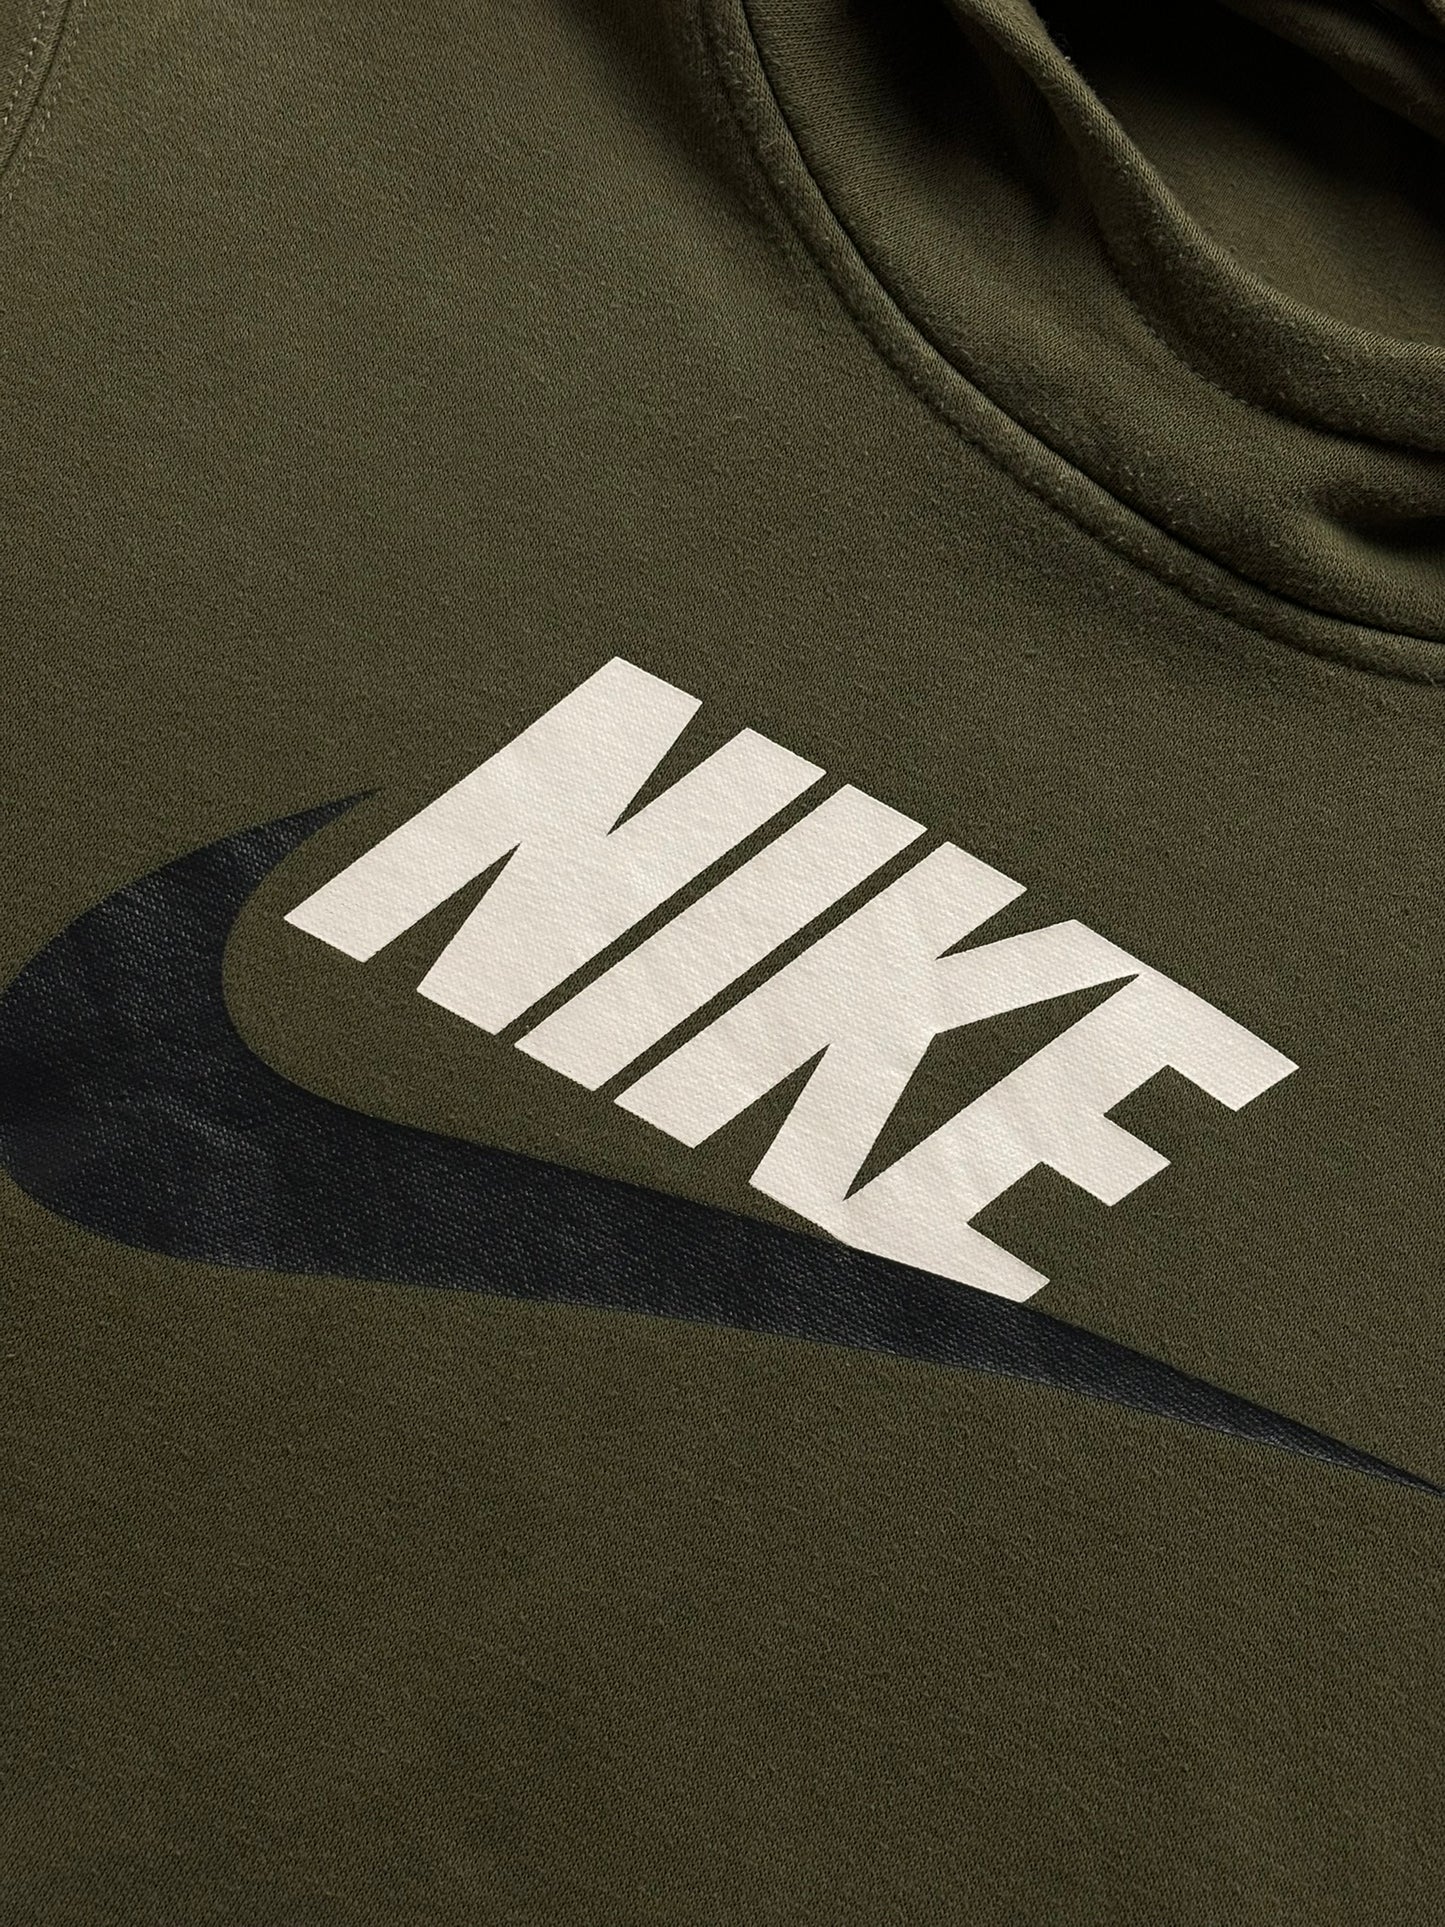 Sudadera hoodie Nike retro - XS